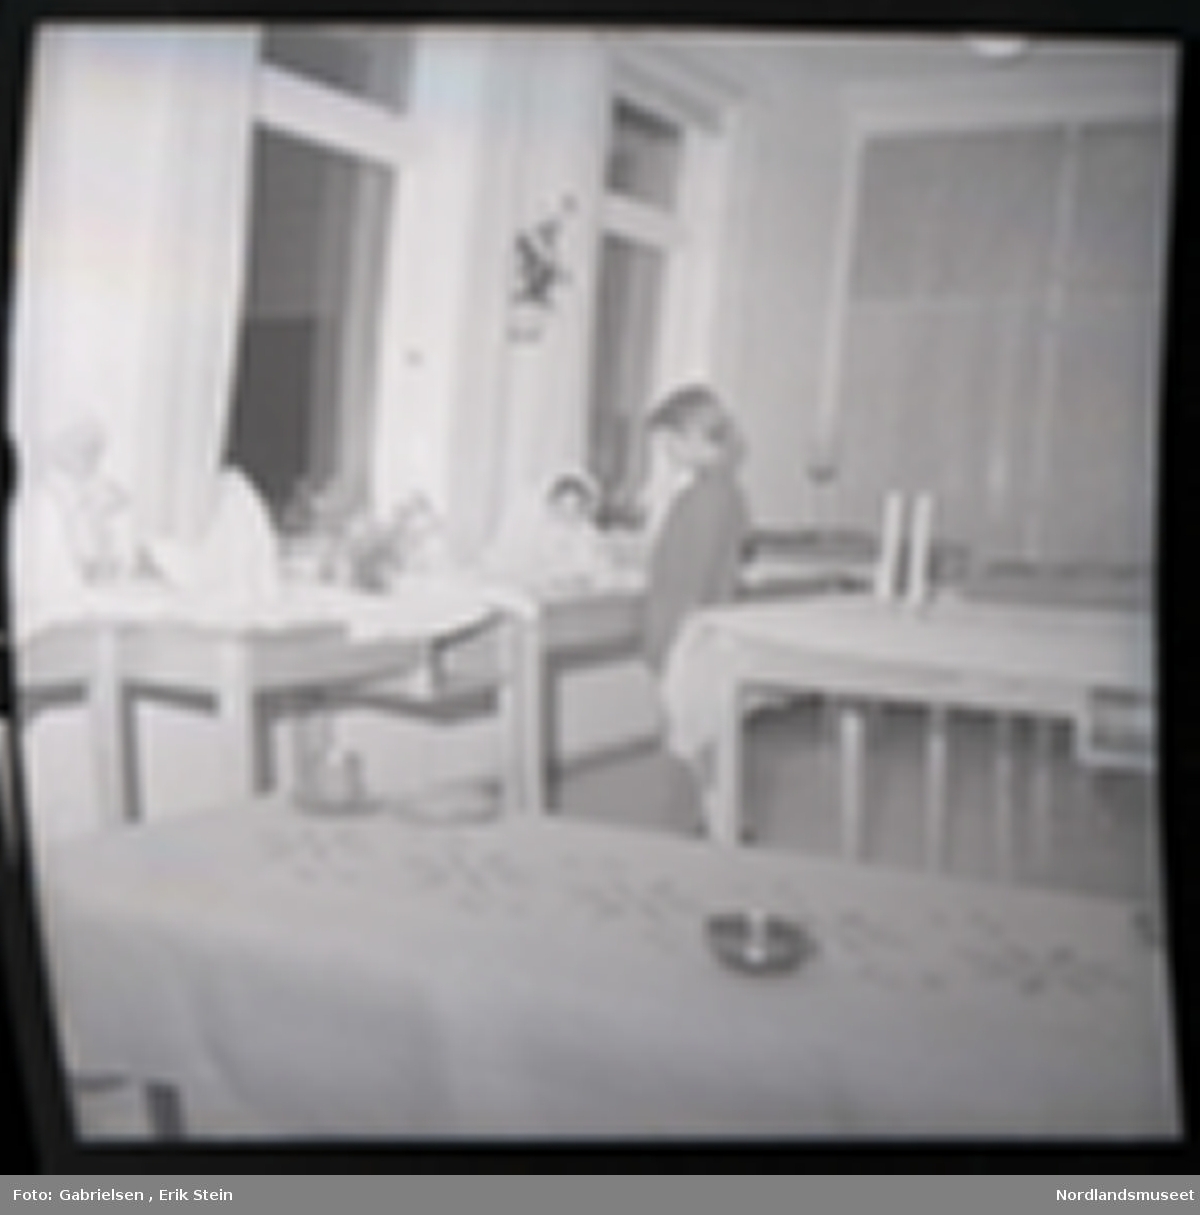 Fotografi av et barn som står inne i et rom og ser på en dukke
som ligger på en bord med en hvit duk 
som står mellom fire bord som står vedsiden av vinduer med gardiner som det ligger hvite duker på og en dukke som står lent på en vegg mellom to vinduer og man ser to andre bord
som står i rommet med duker på og to stearinlys som står
på bordet som står bak barnet i rommet og man ser
en potteplante som henger på veggen mellom to vinduer